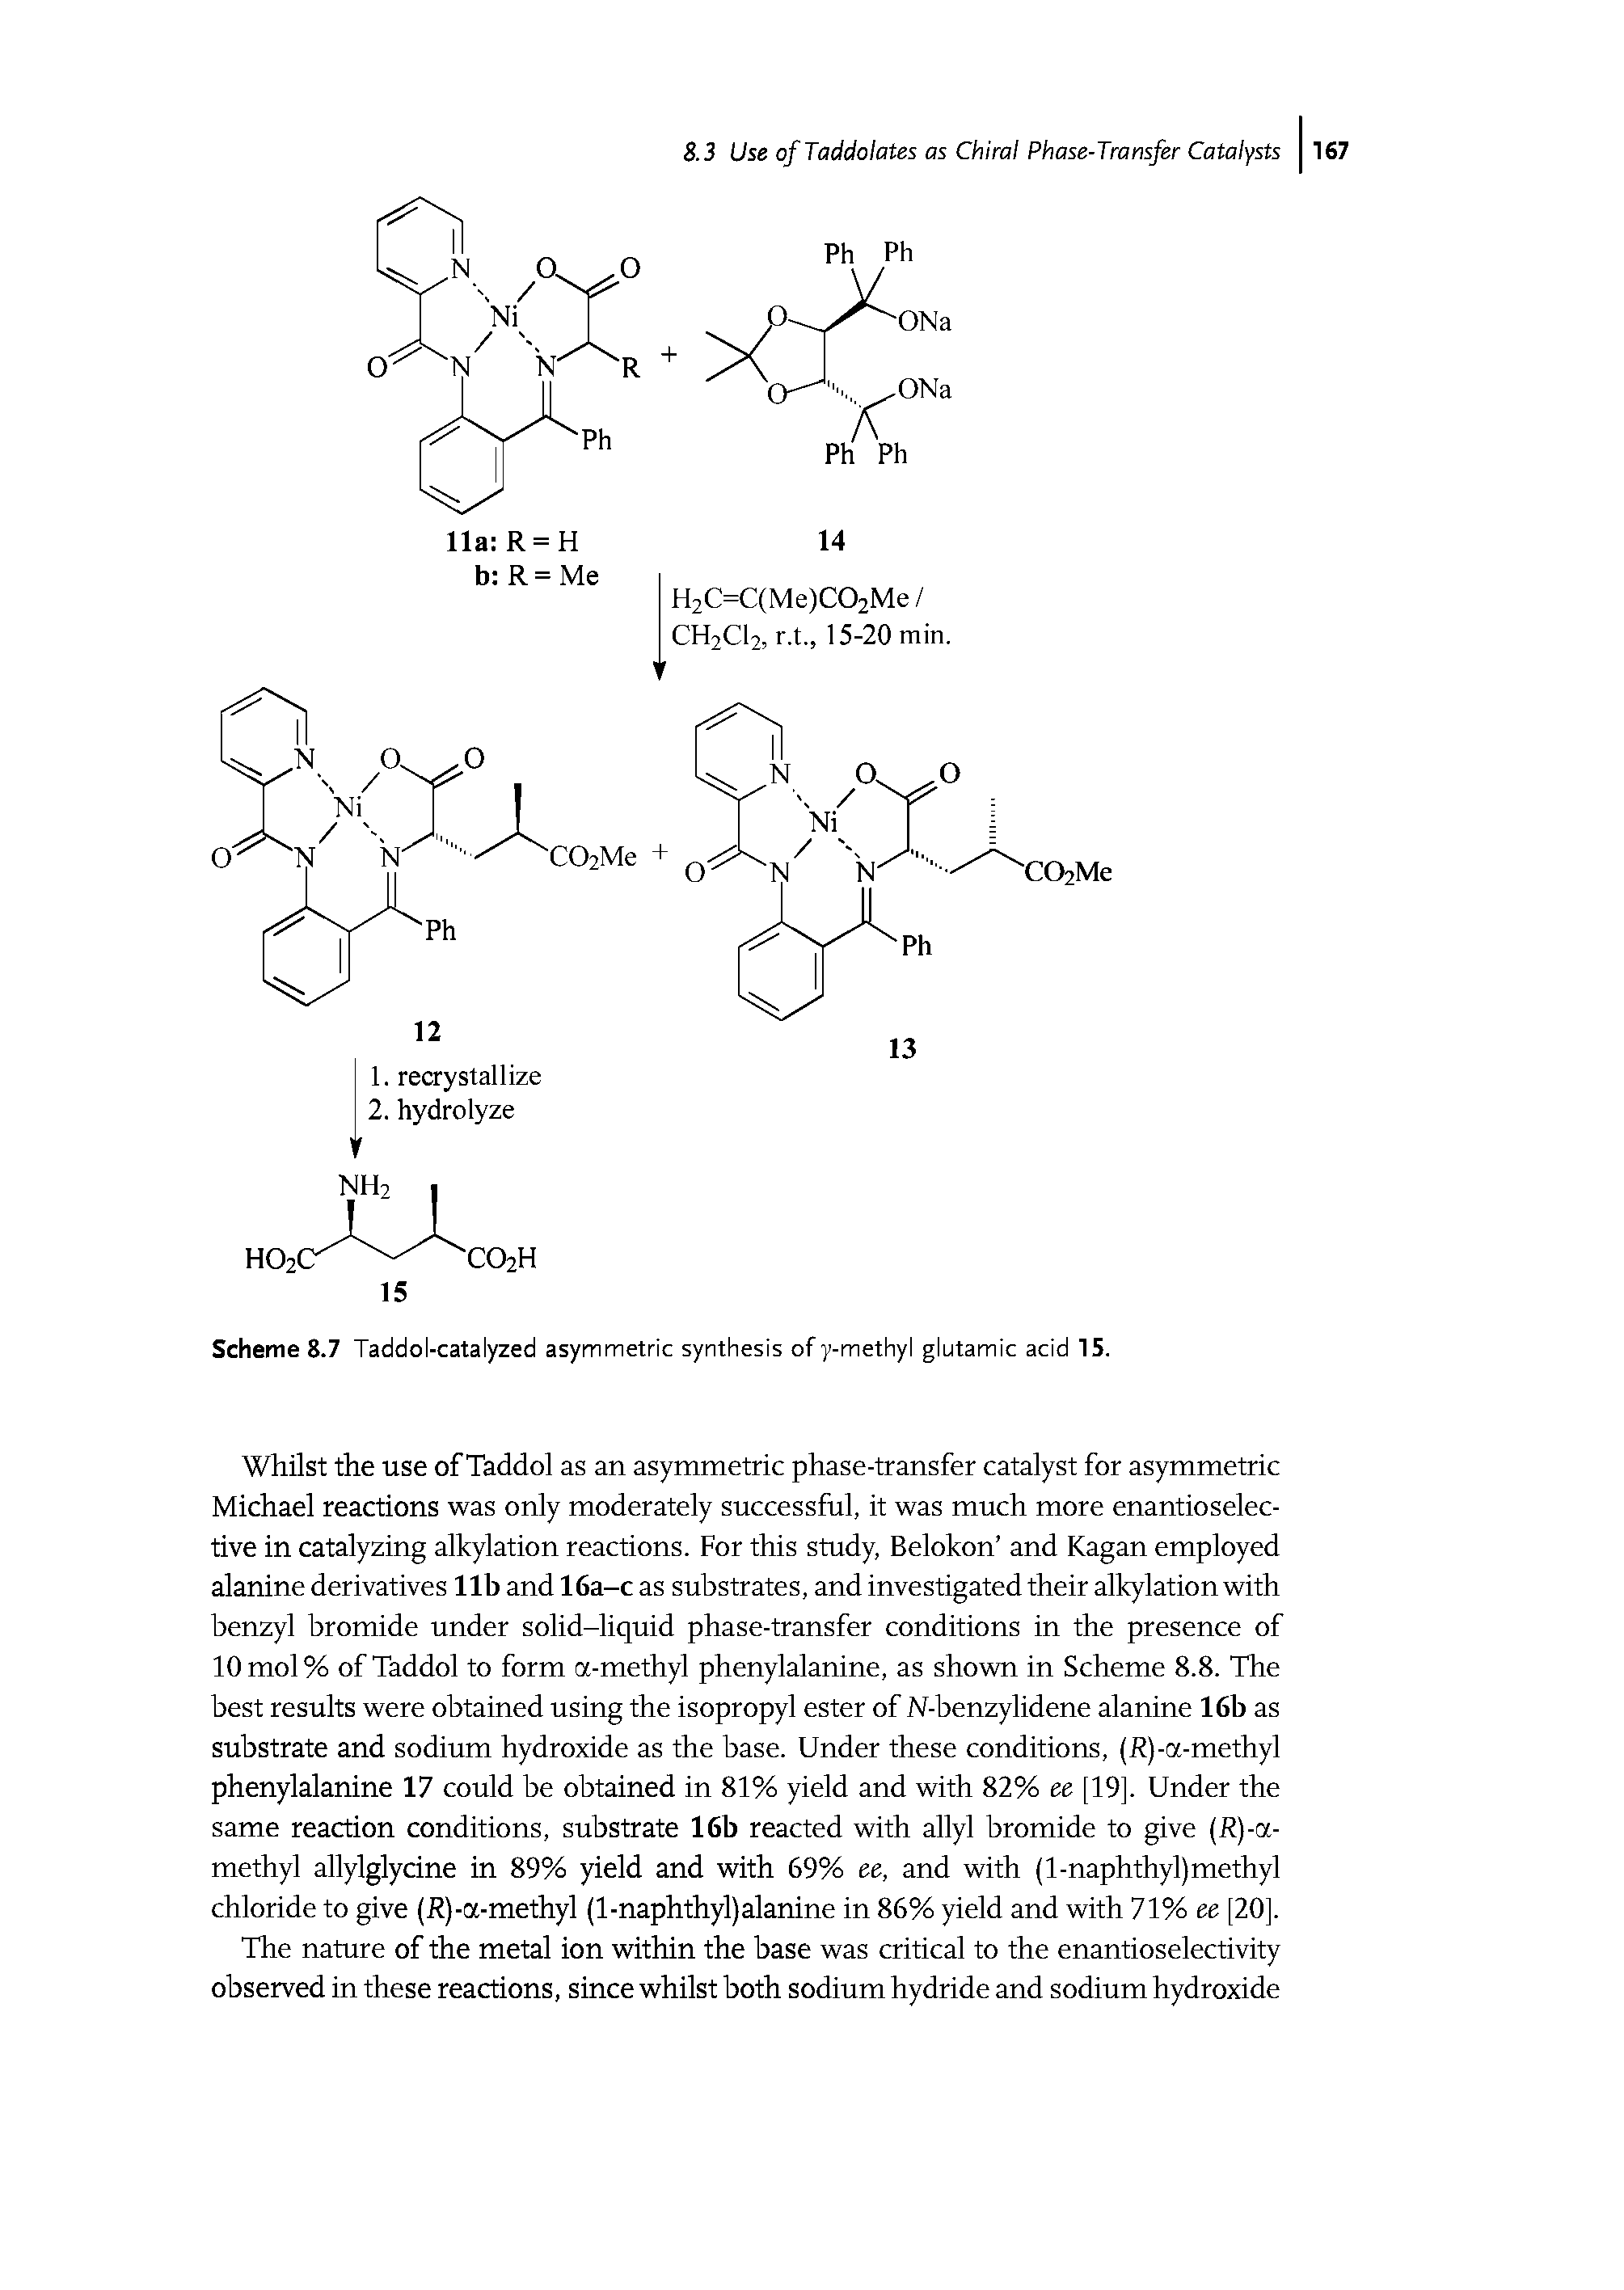 Scheme 8.7 Taddol-catalyzed asymmetric synthesis of y-methyl glutamic acid 15.